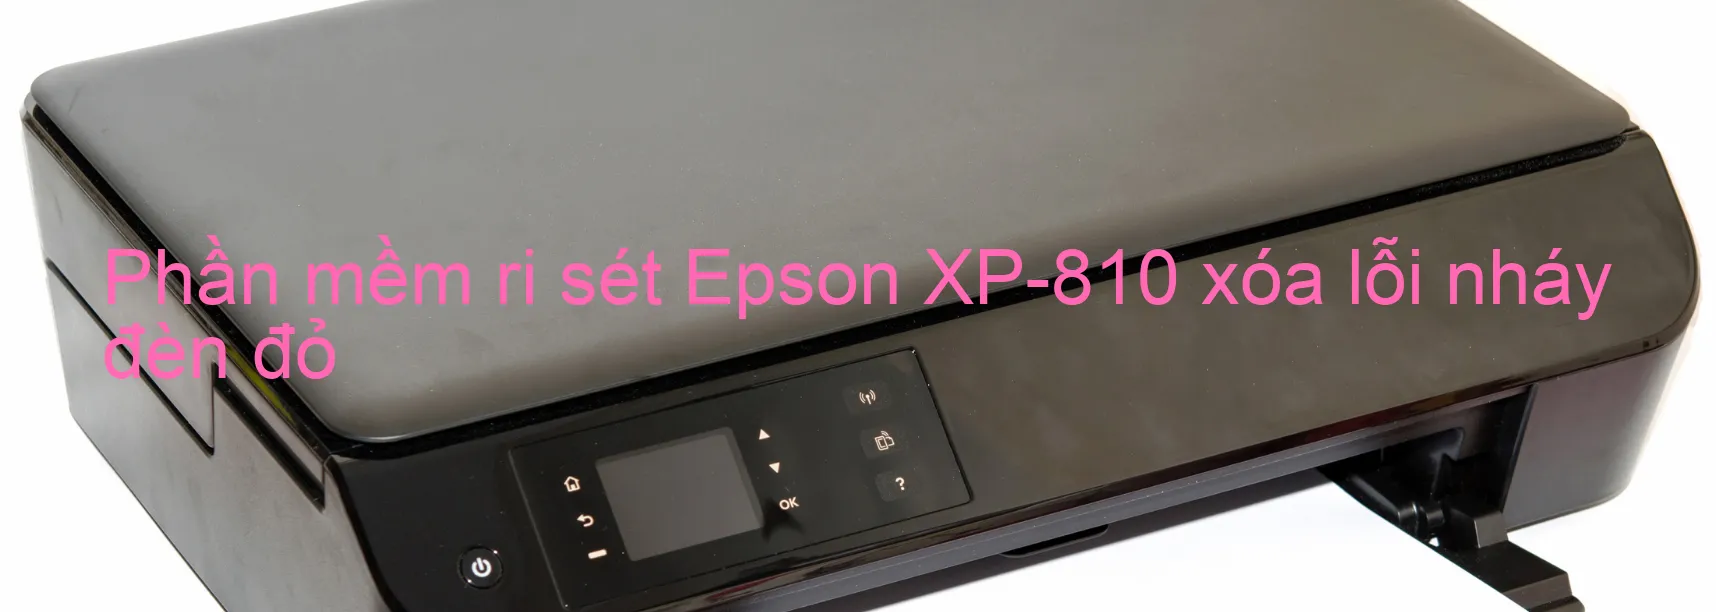 Phần mềm reset Epson XP-810 xóa lỗi nháy đèn đỏ